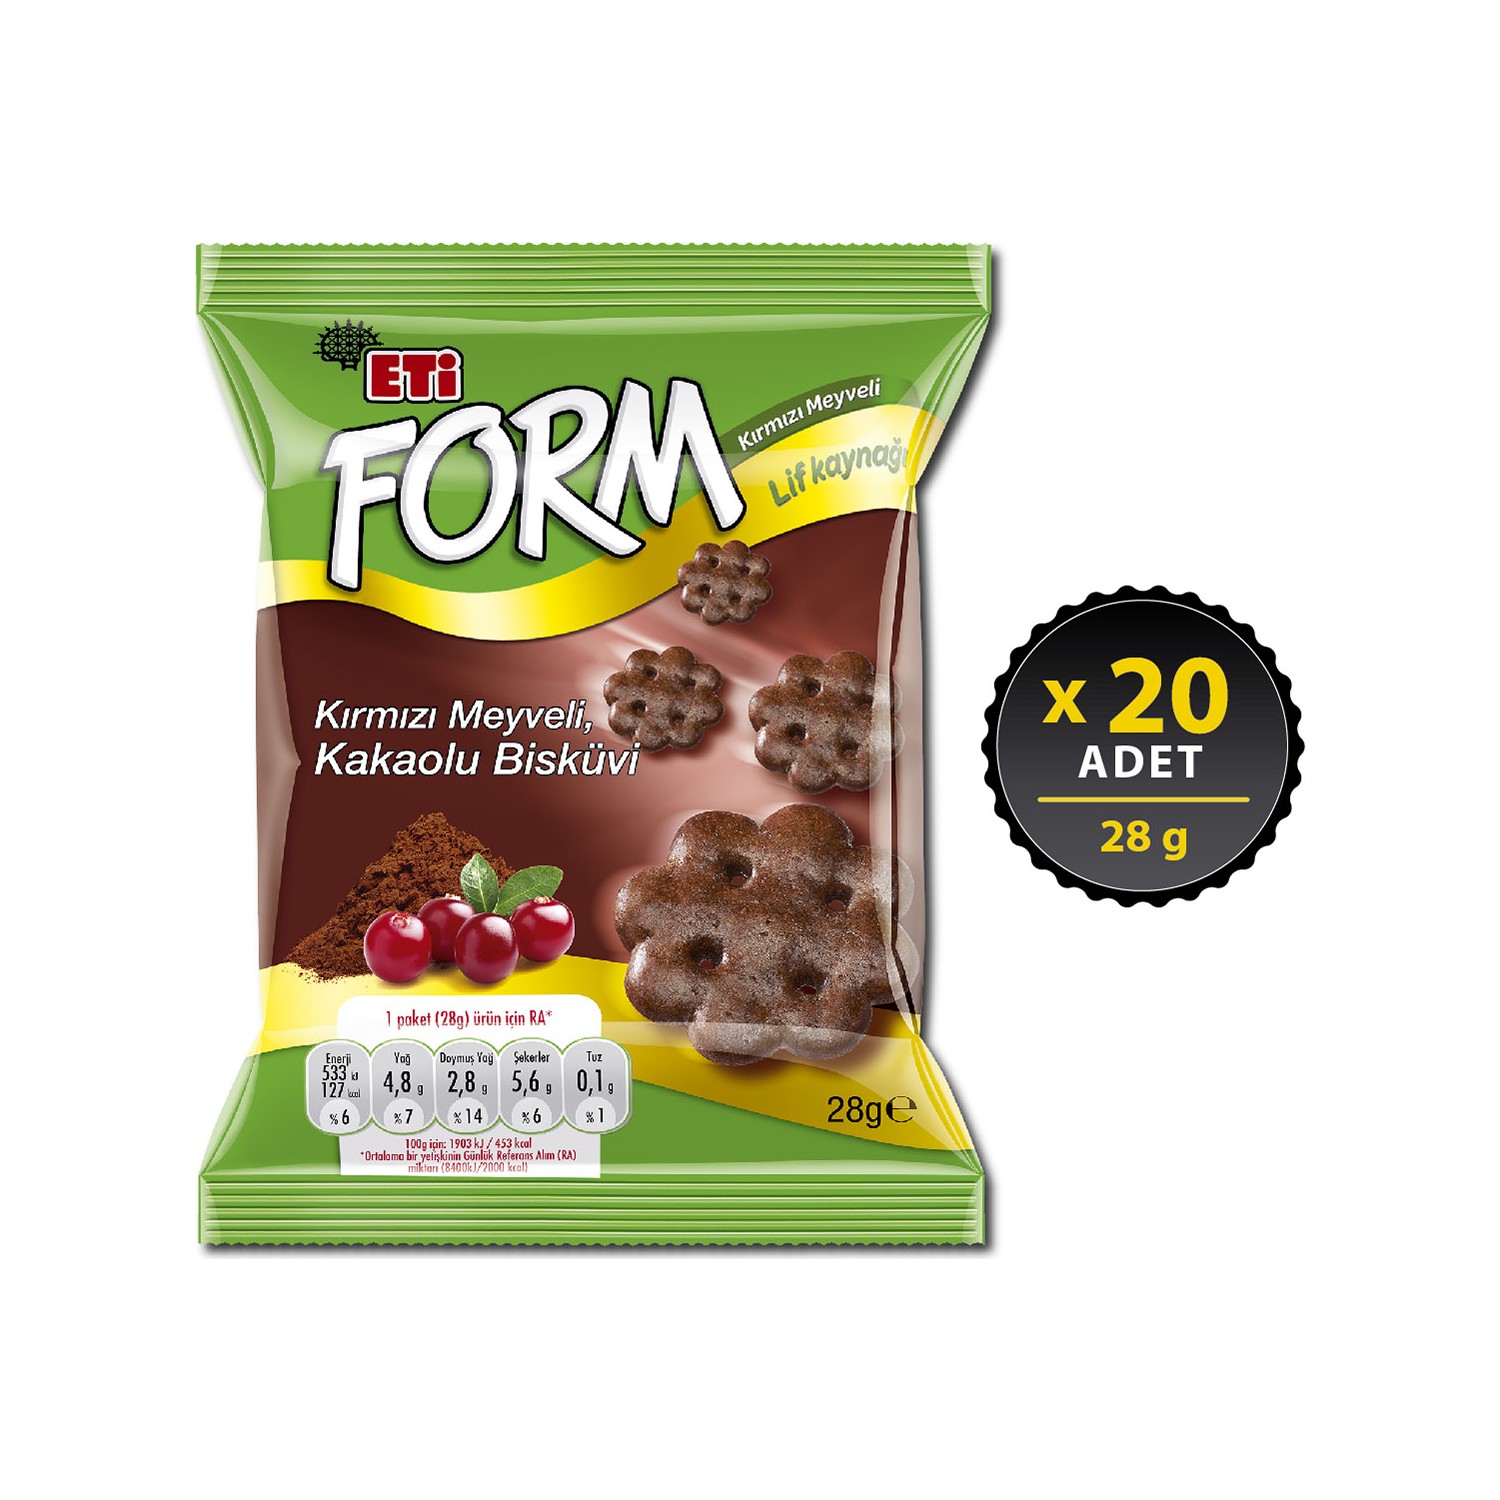 Eti Form Kırmızı Meyveli Kakaolu Bisküvi 28 g x 20 Adet Fiyatı